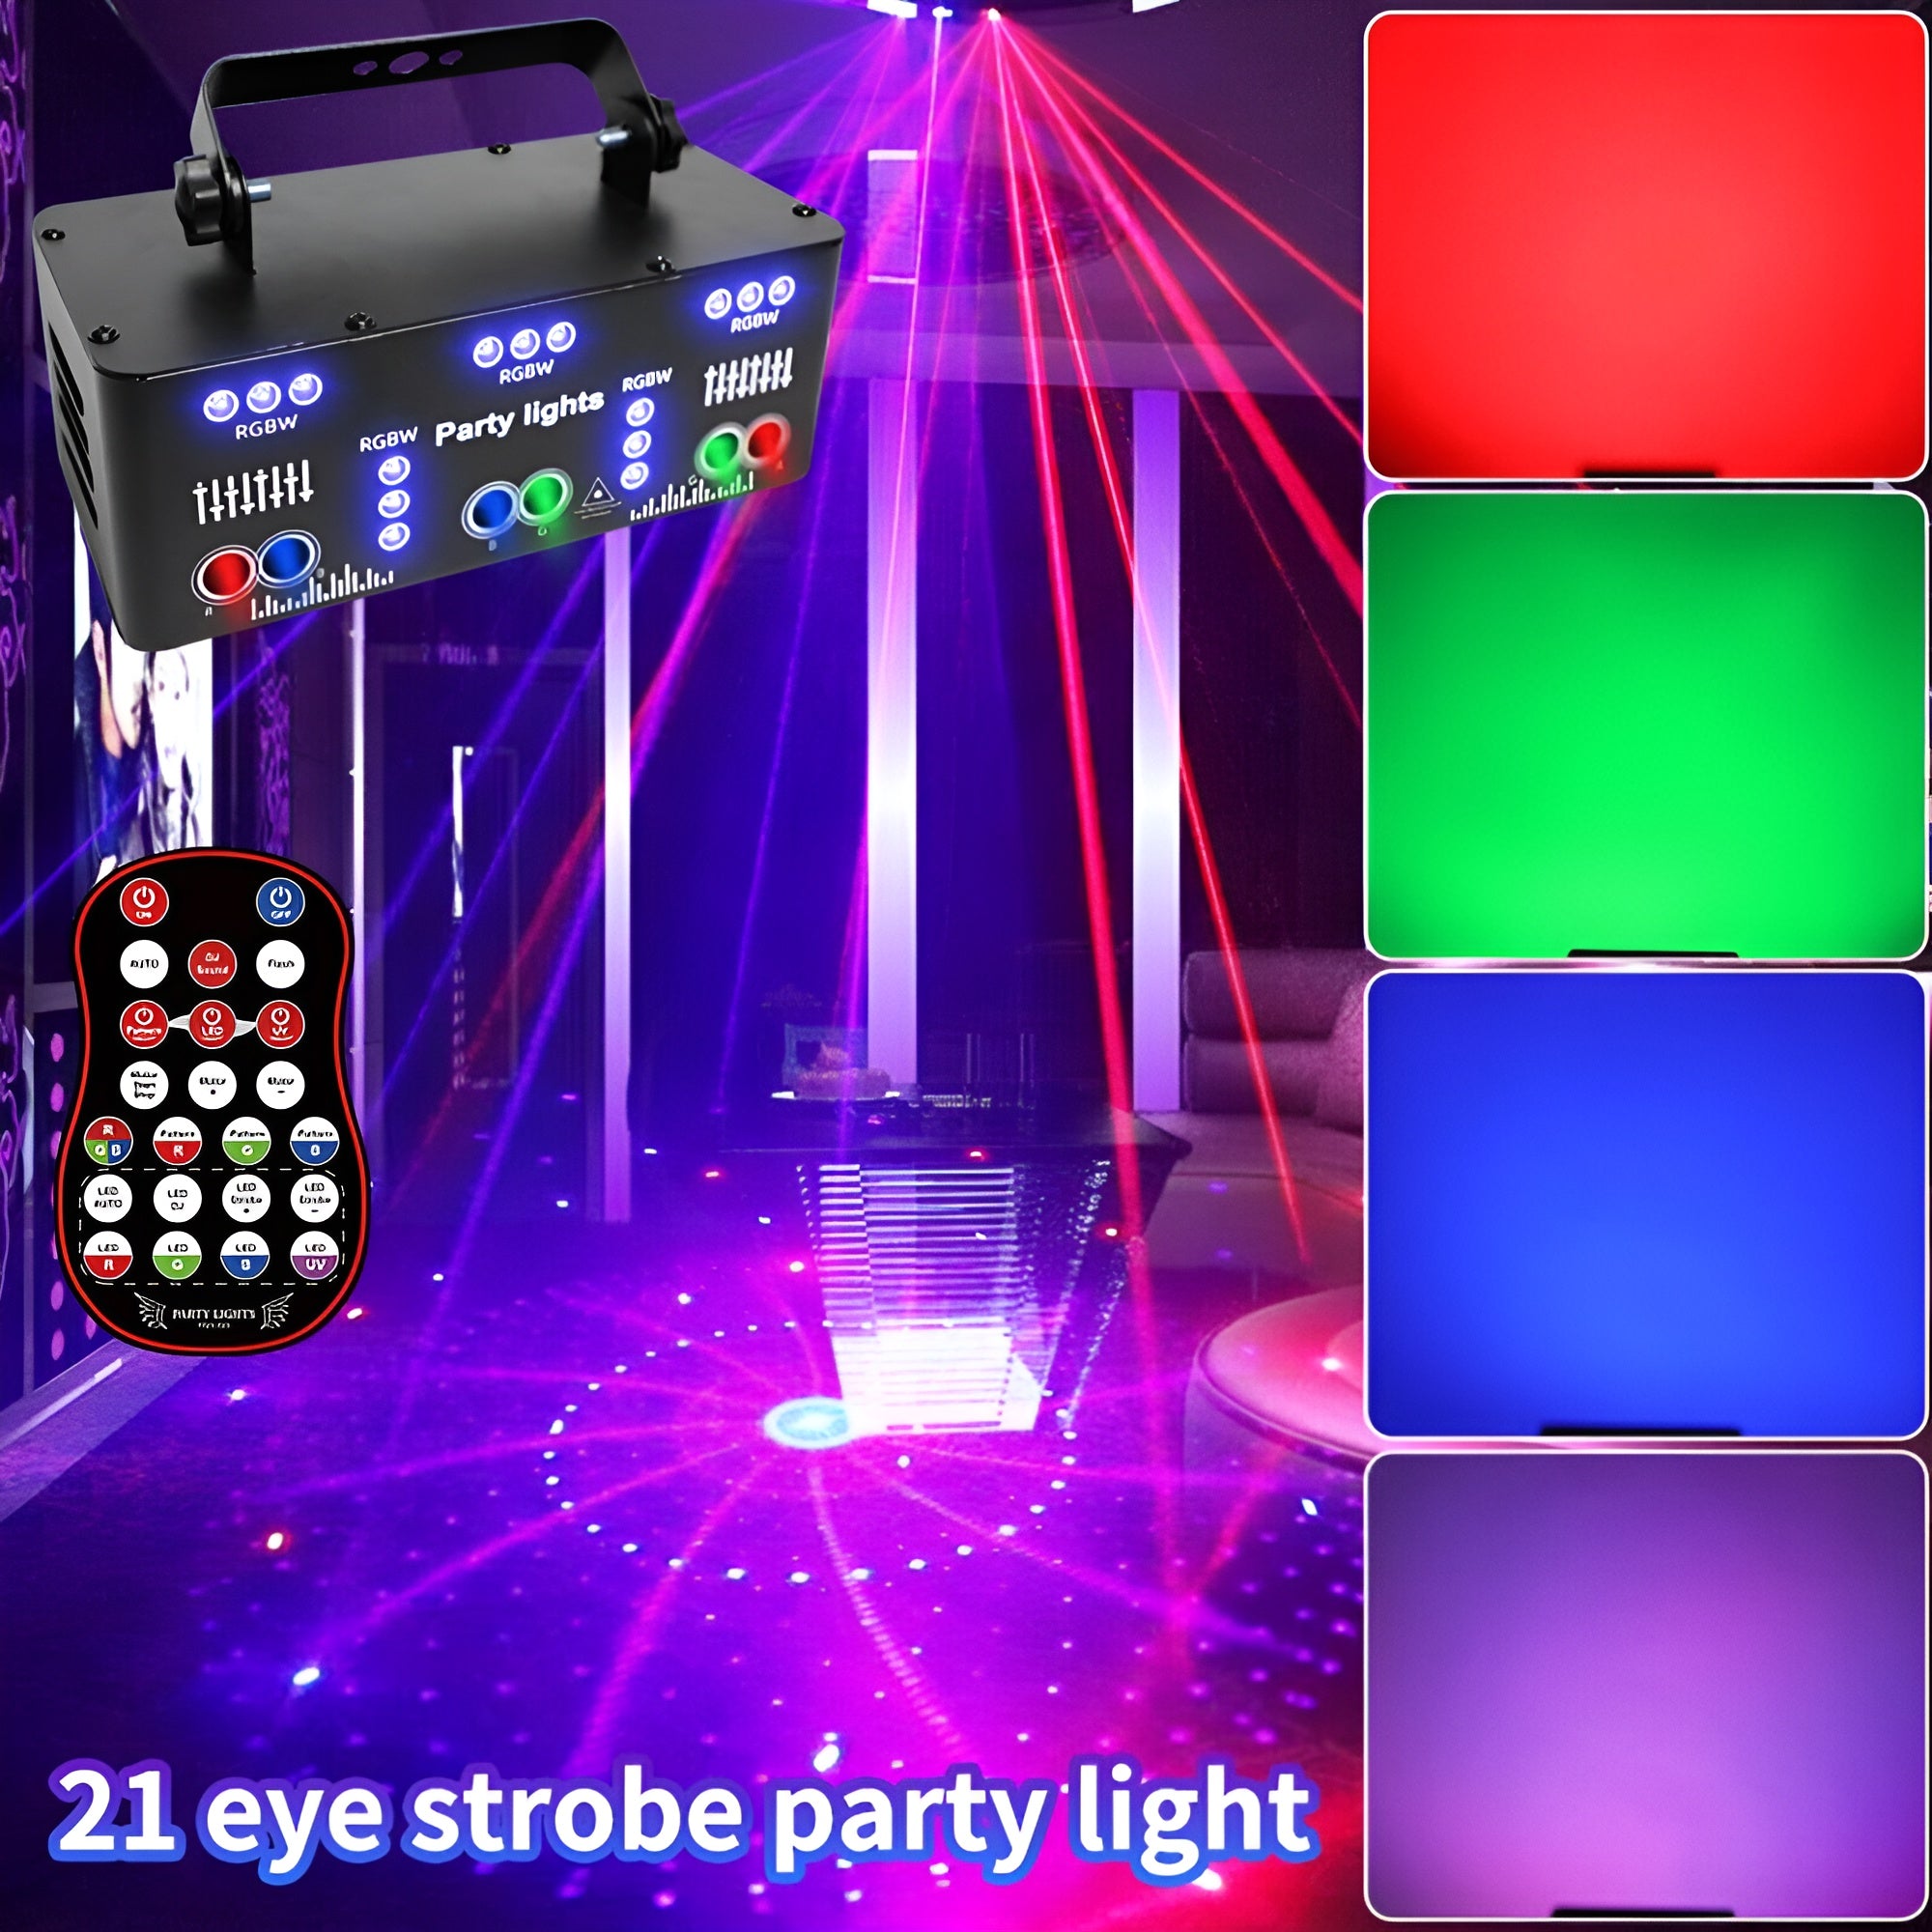  21 Eyes Party Lights Dj Disco Light Strobe Stage Light